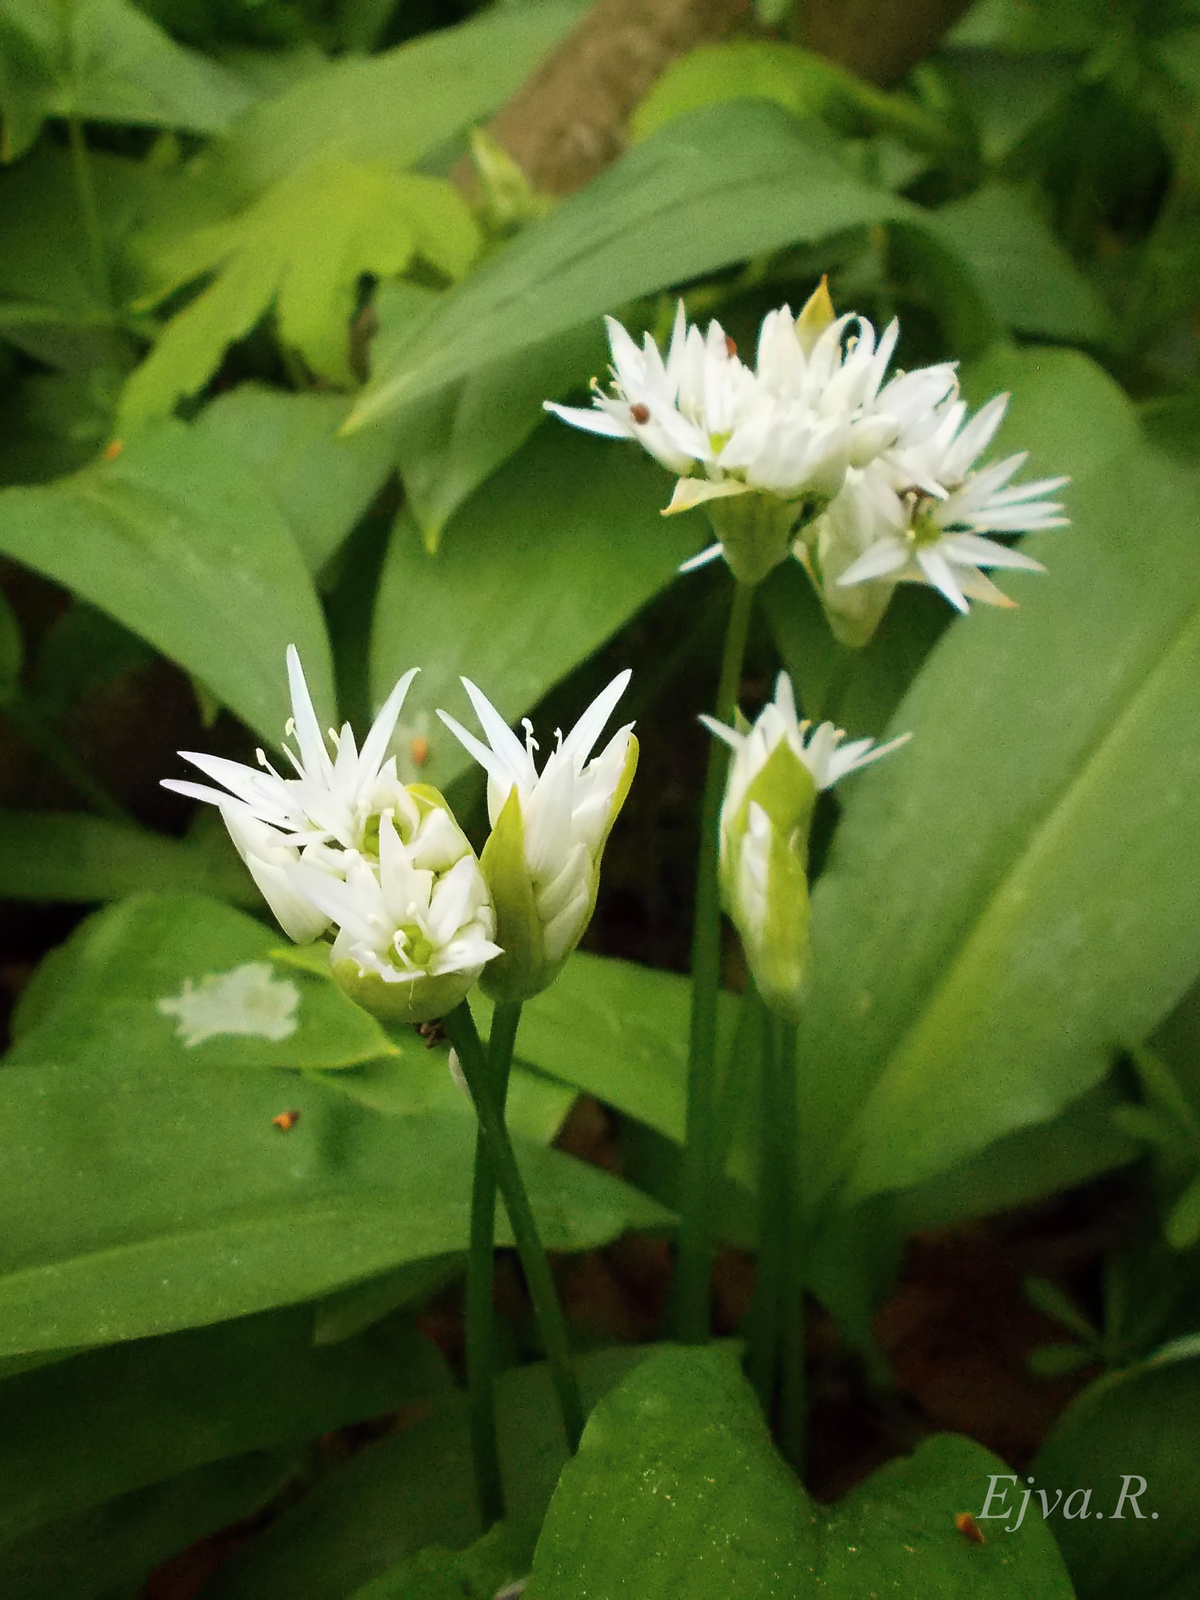 Medvehagyma virágai (Allium ursinum)